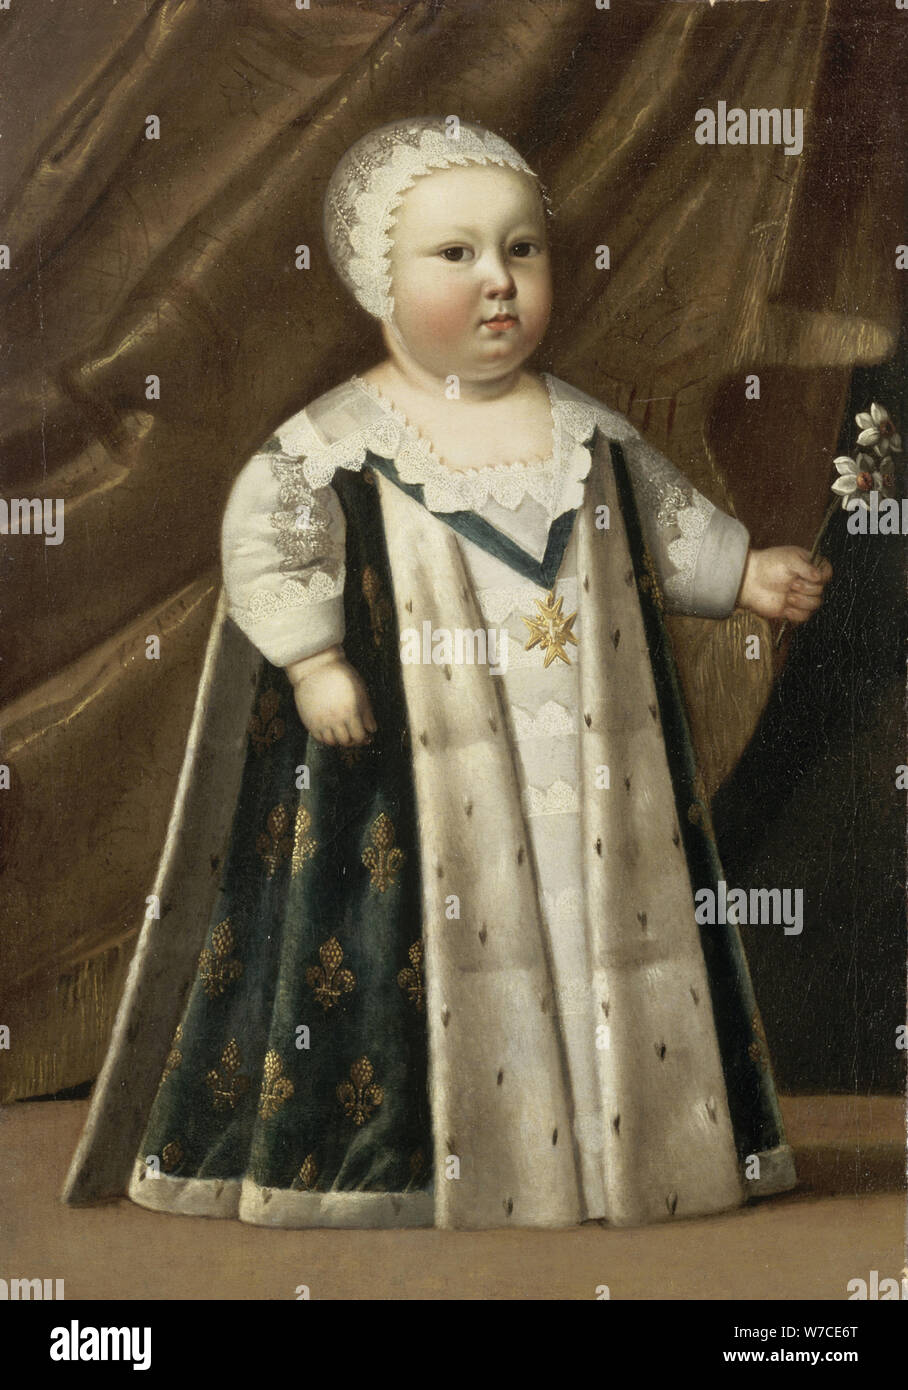 Ludwig XIV., König von Frankreich (1638-1715) als Baby. Stockfoto